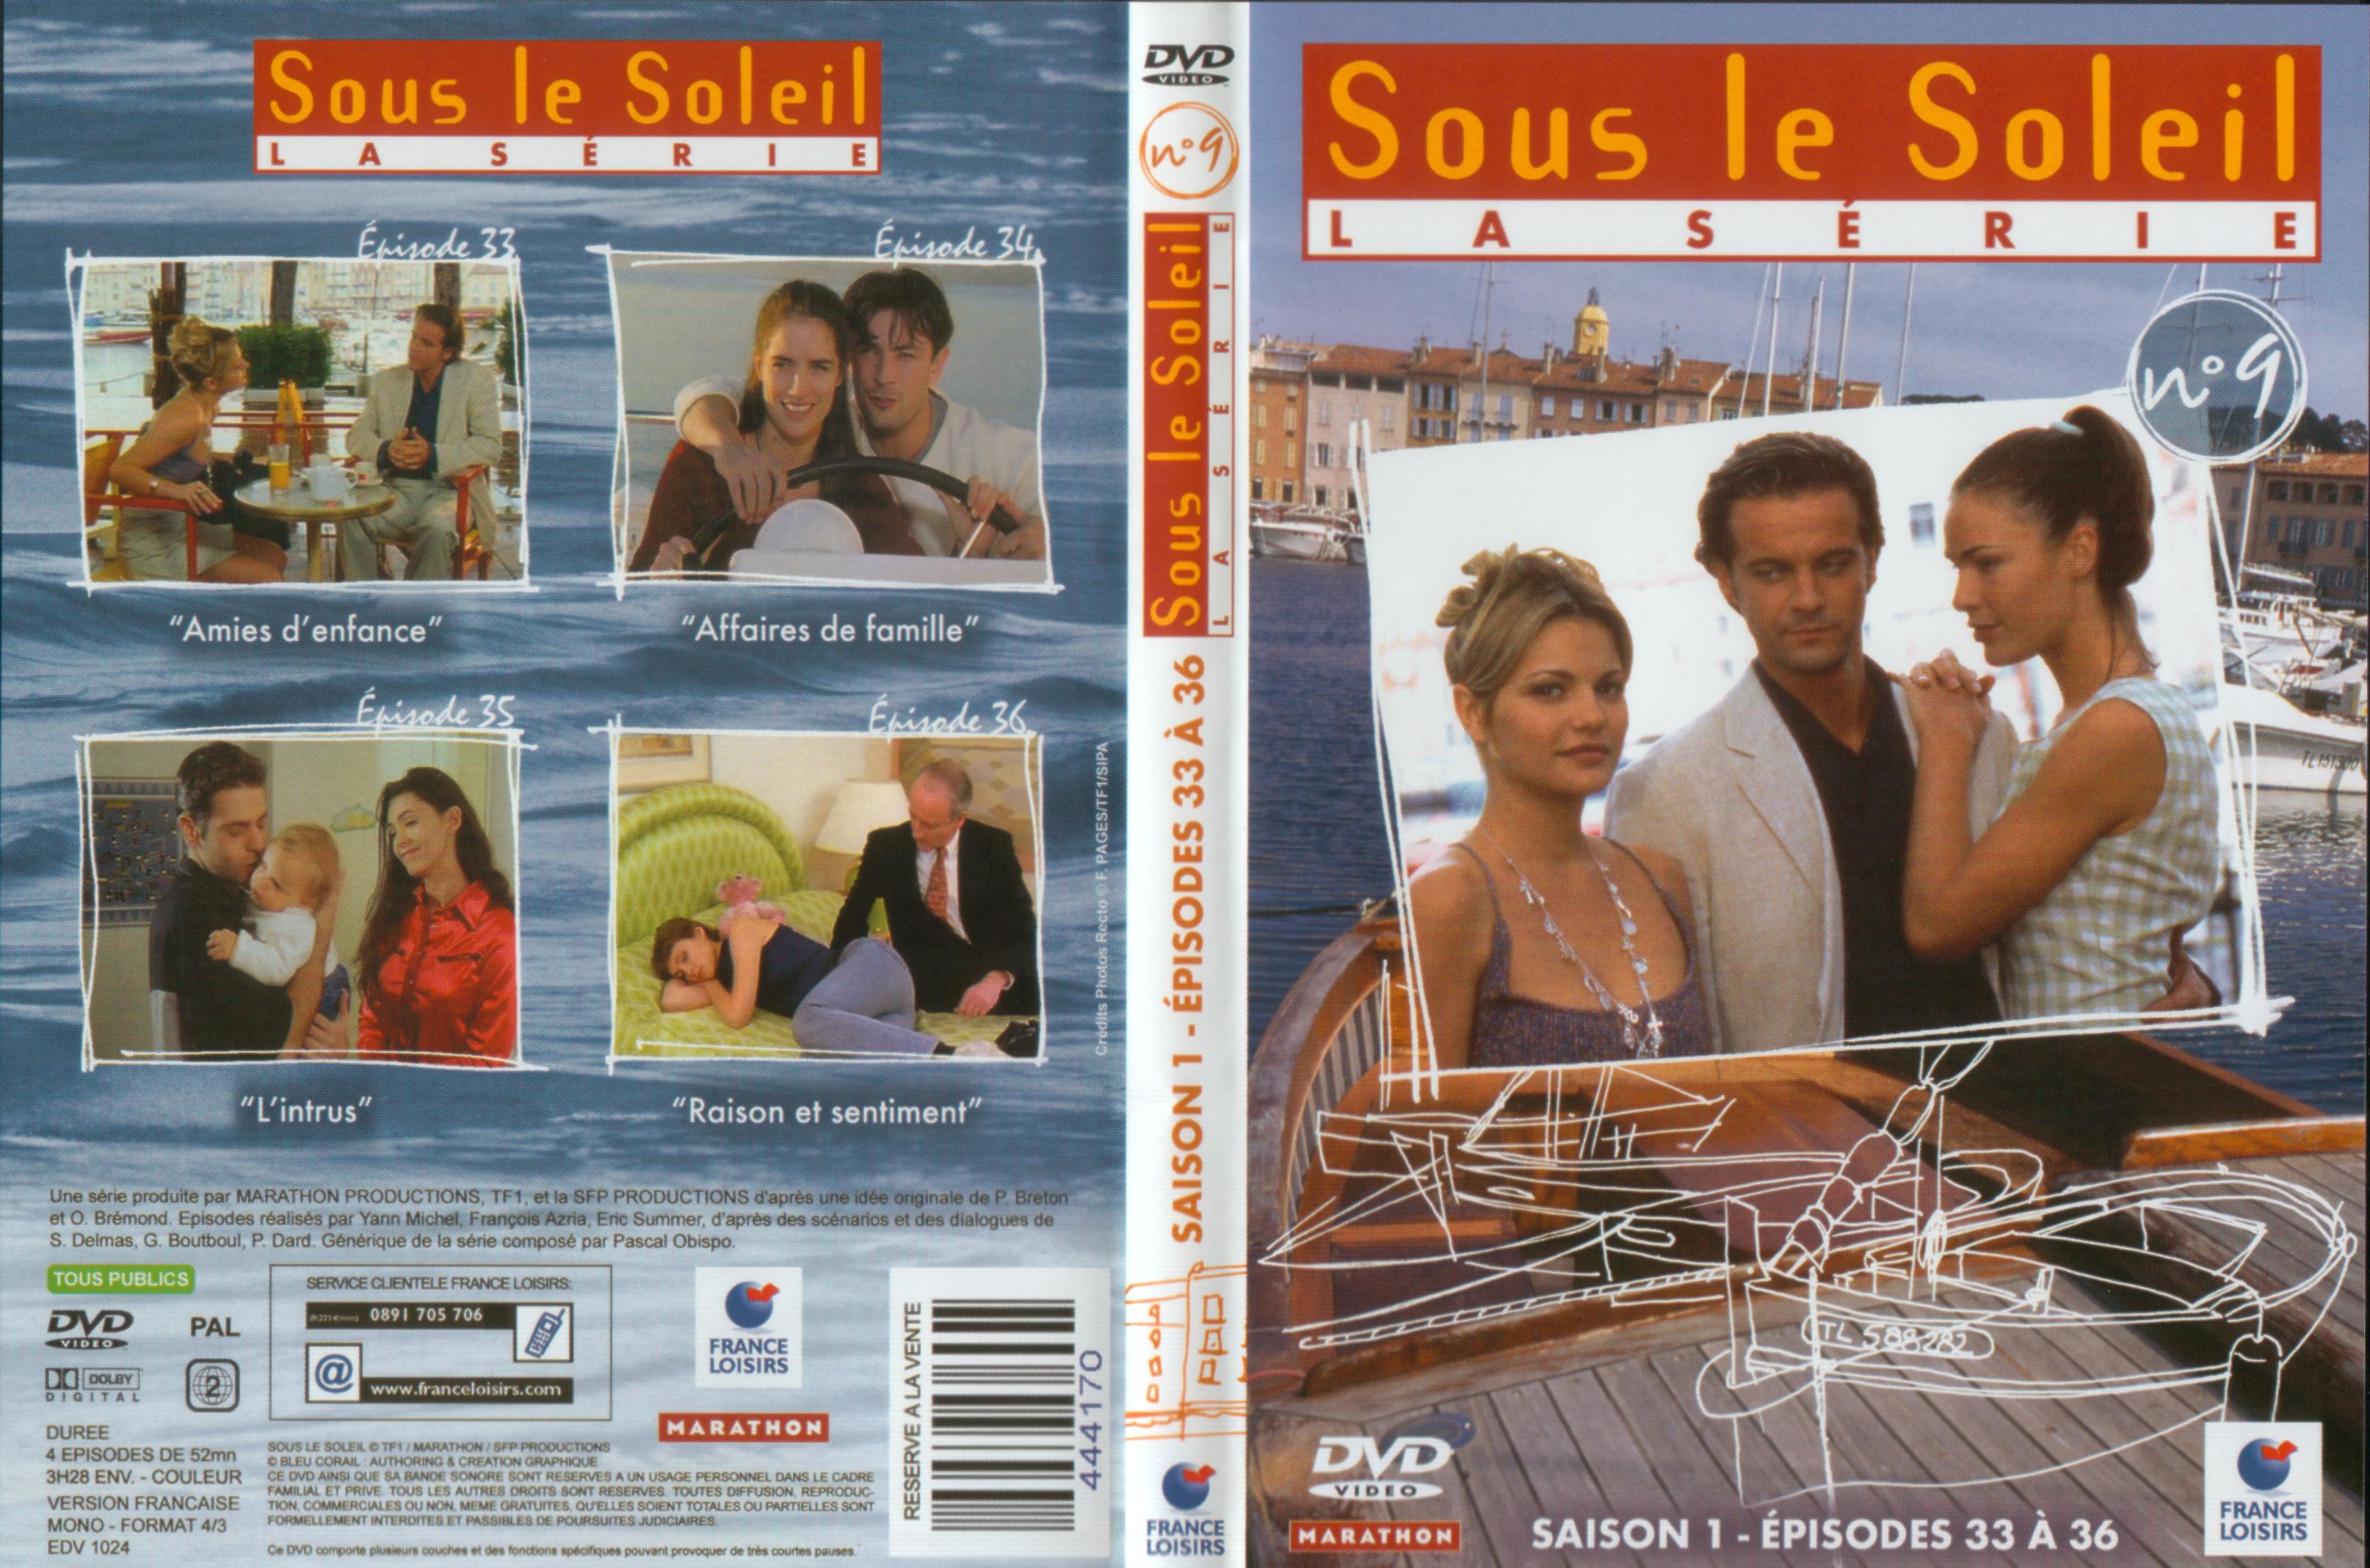 Jaquette DVD Sous le soleil saison 1 vol 9